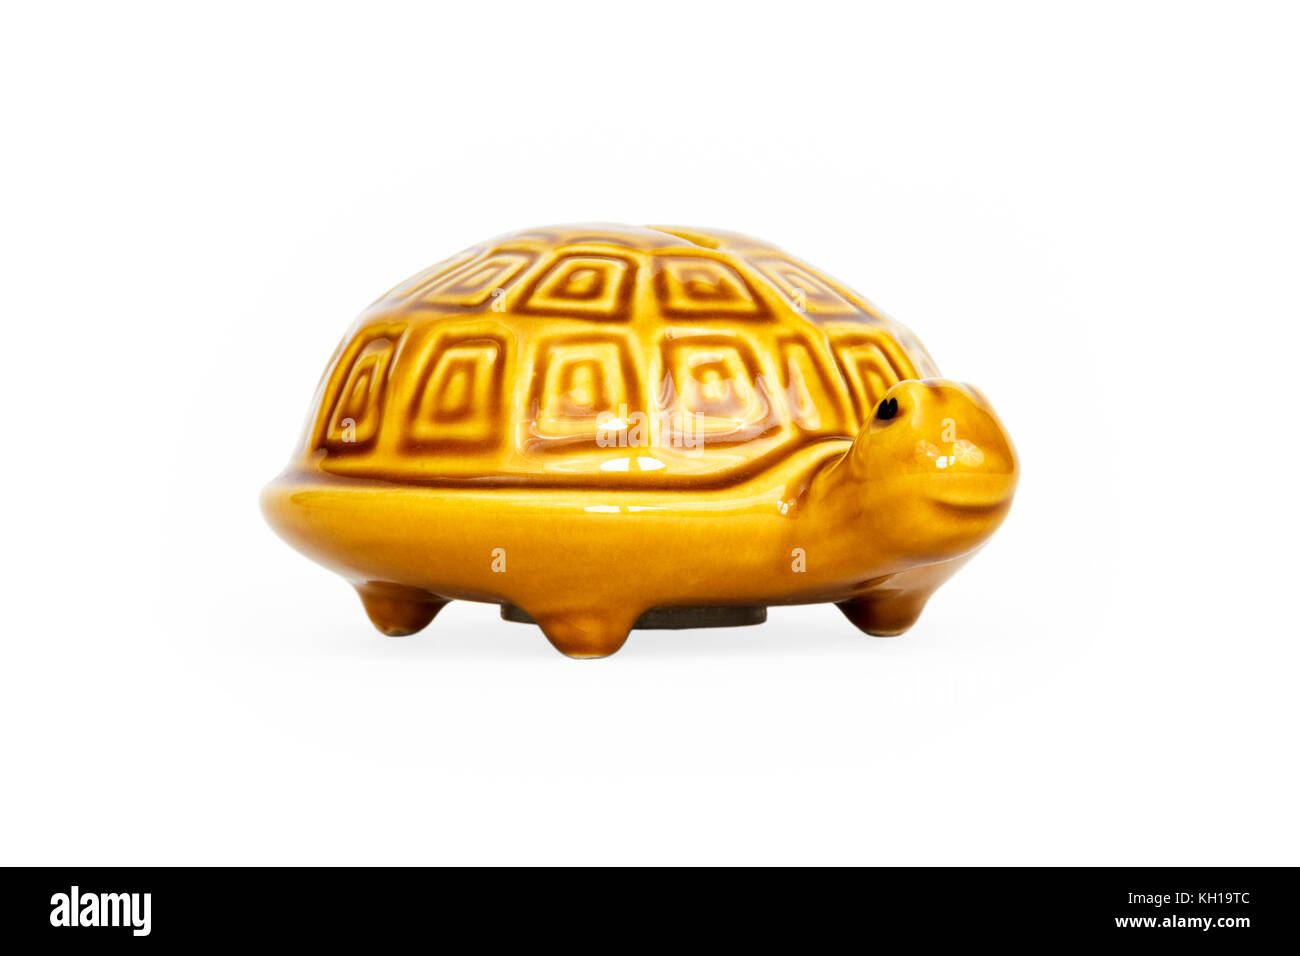 Una smaltata di colore giallo o arancio ceramica Tartaruga scatola di denaro, contro uno sfondo bianco Foto Stock